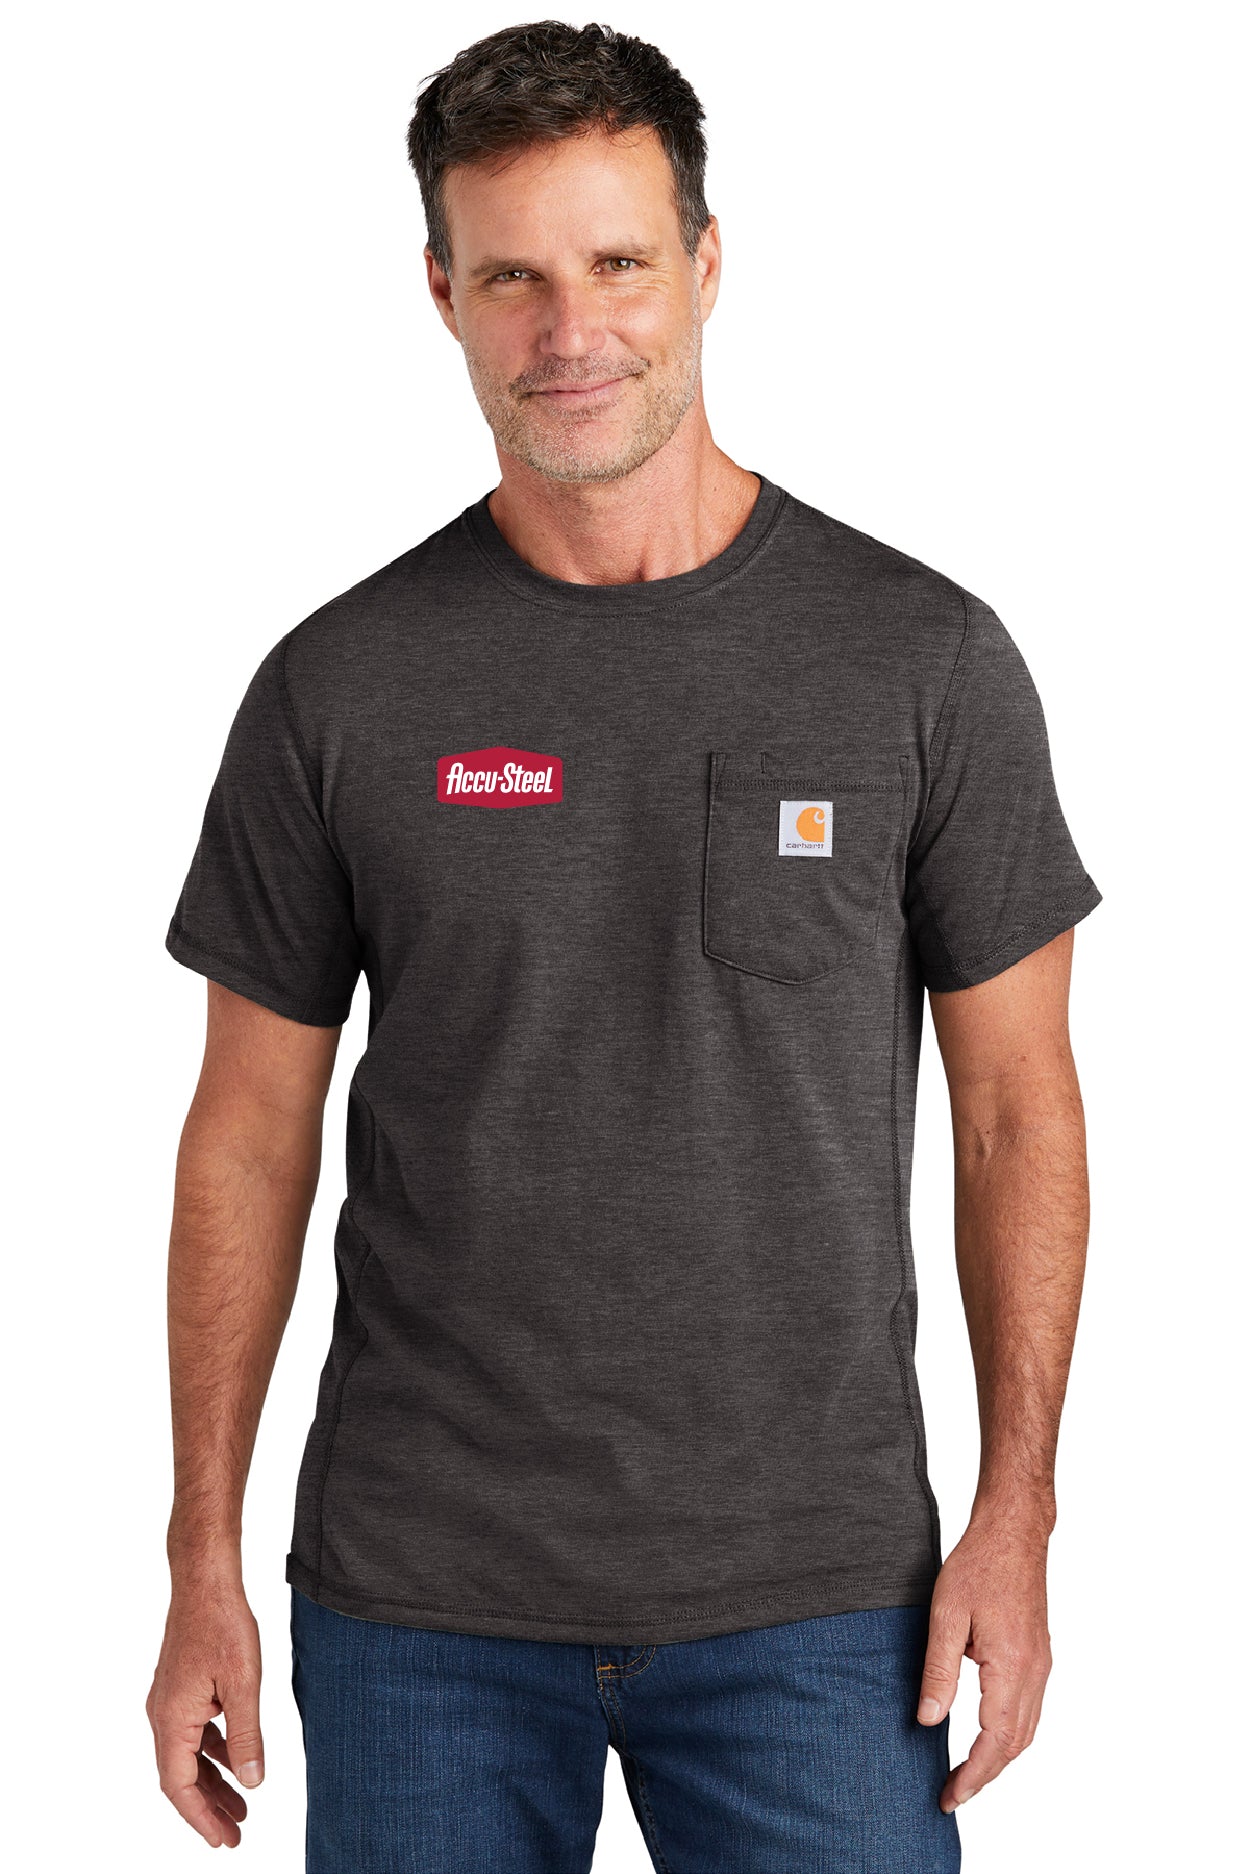 T-Shirt "Carhartt Force Short Sleeve Pocket T-Shirt"